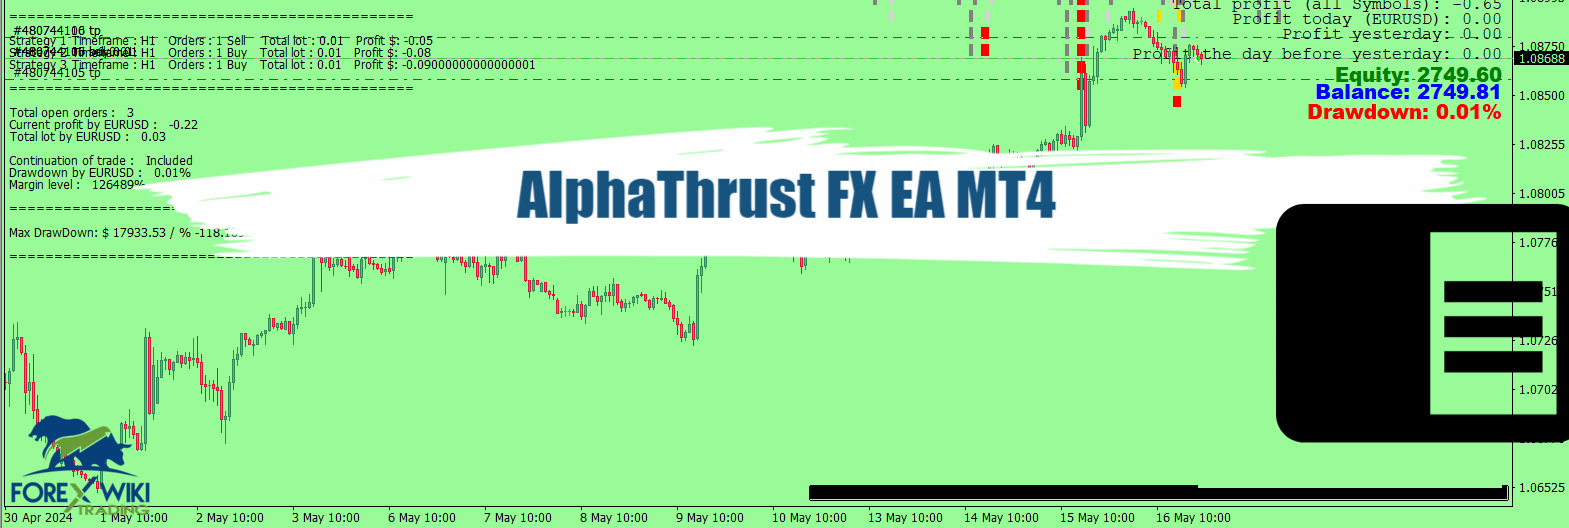 AlphaThrust FX EA MT4 - Free Download 6